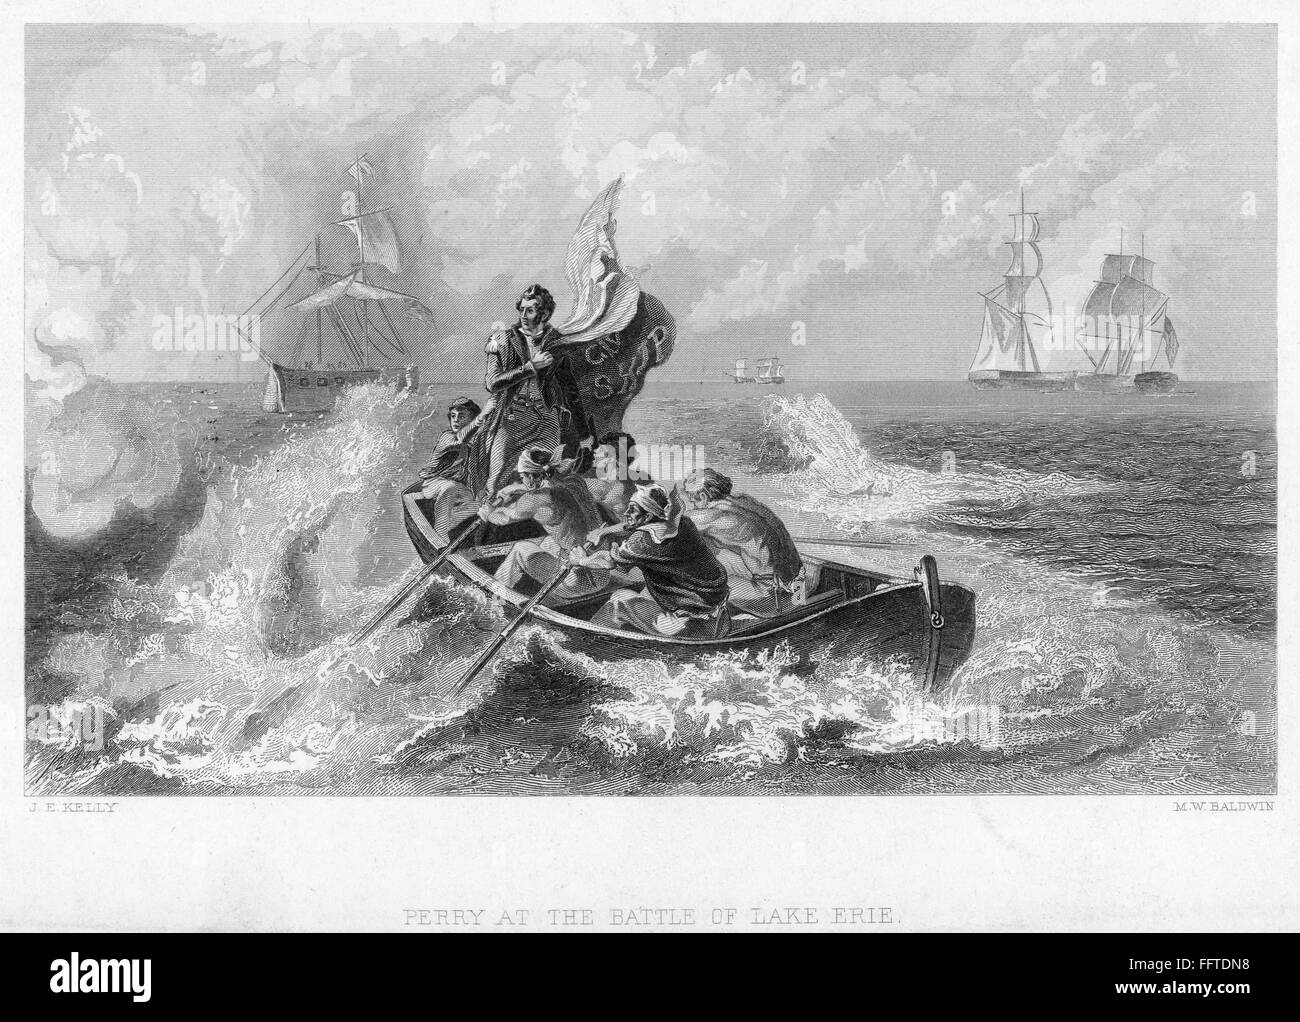 La batalla del lago Erie, 1813. /NCommodore Oliver Perry peligro dejando a su buque insignia, el 'Lawrence' para el 'Niagara' para continuar luchando contra los británicos en la batalla del lago Erie, 10 de septiembre de 1813. Grabado de línea, del siglo XIX. Foto de stock